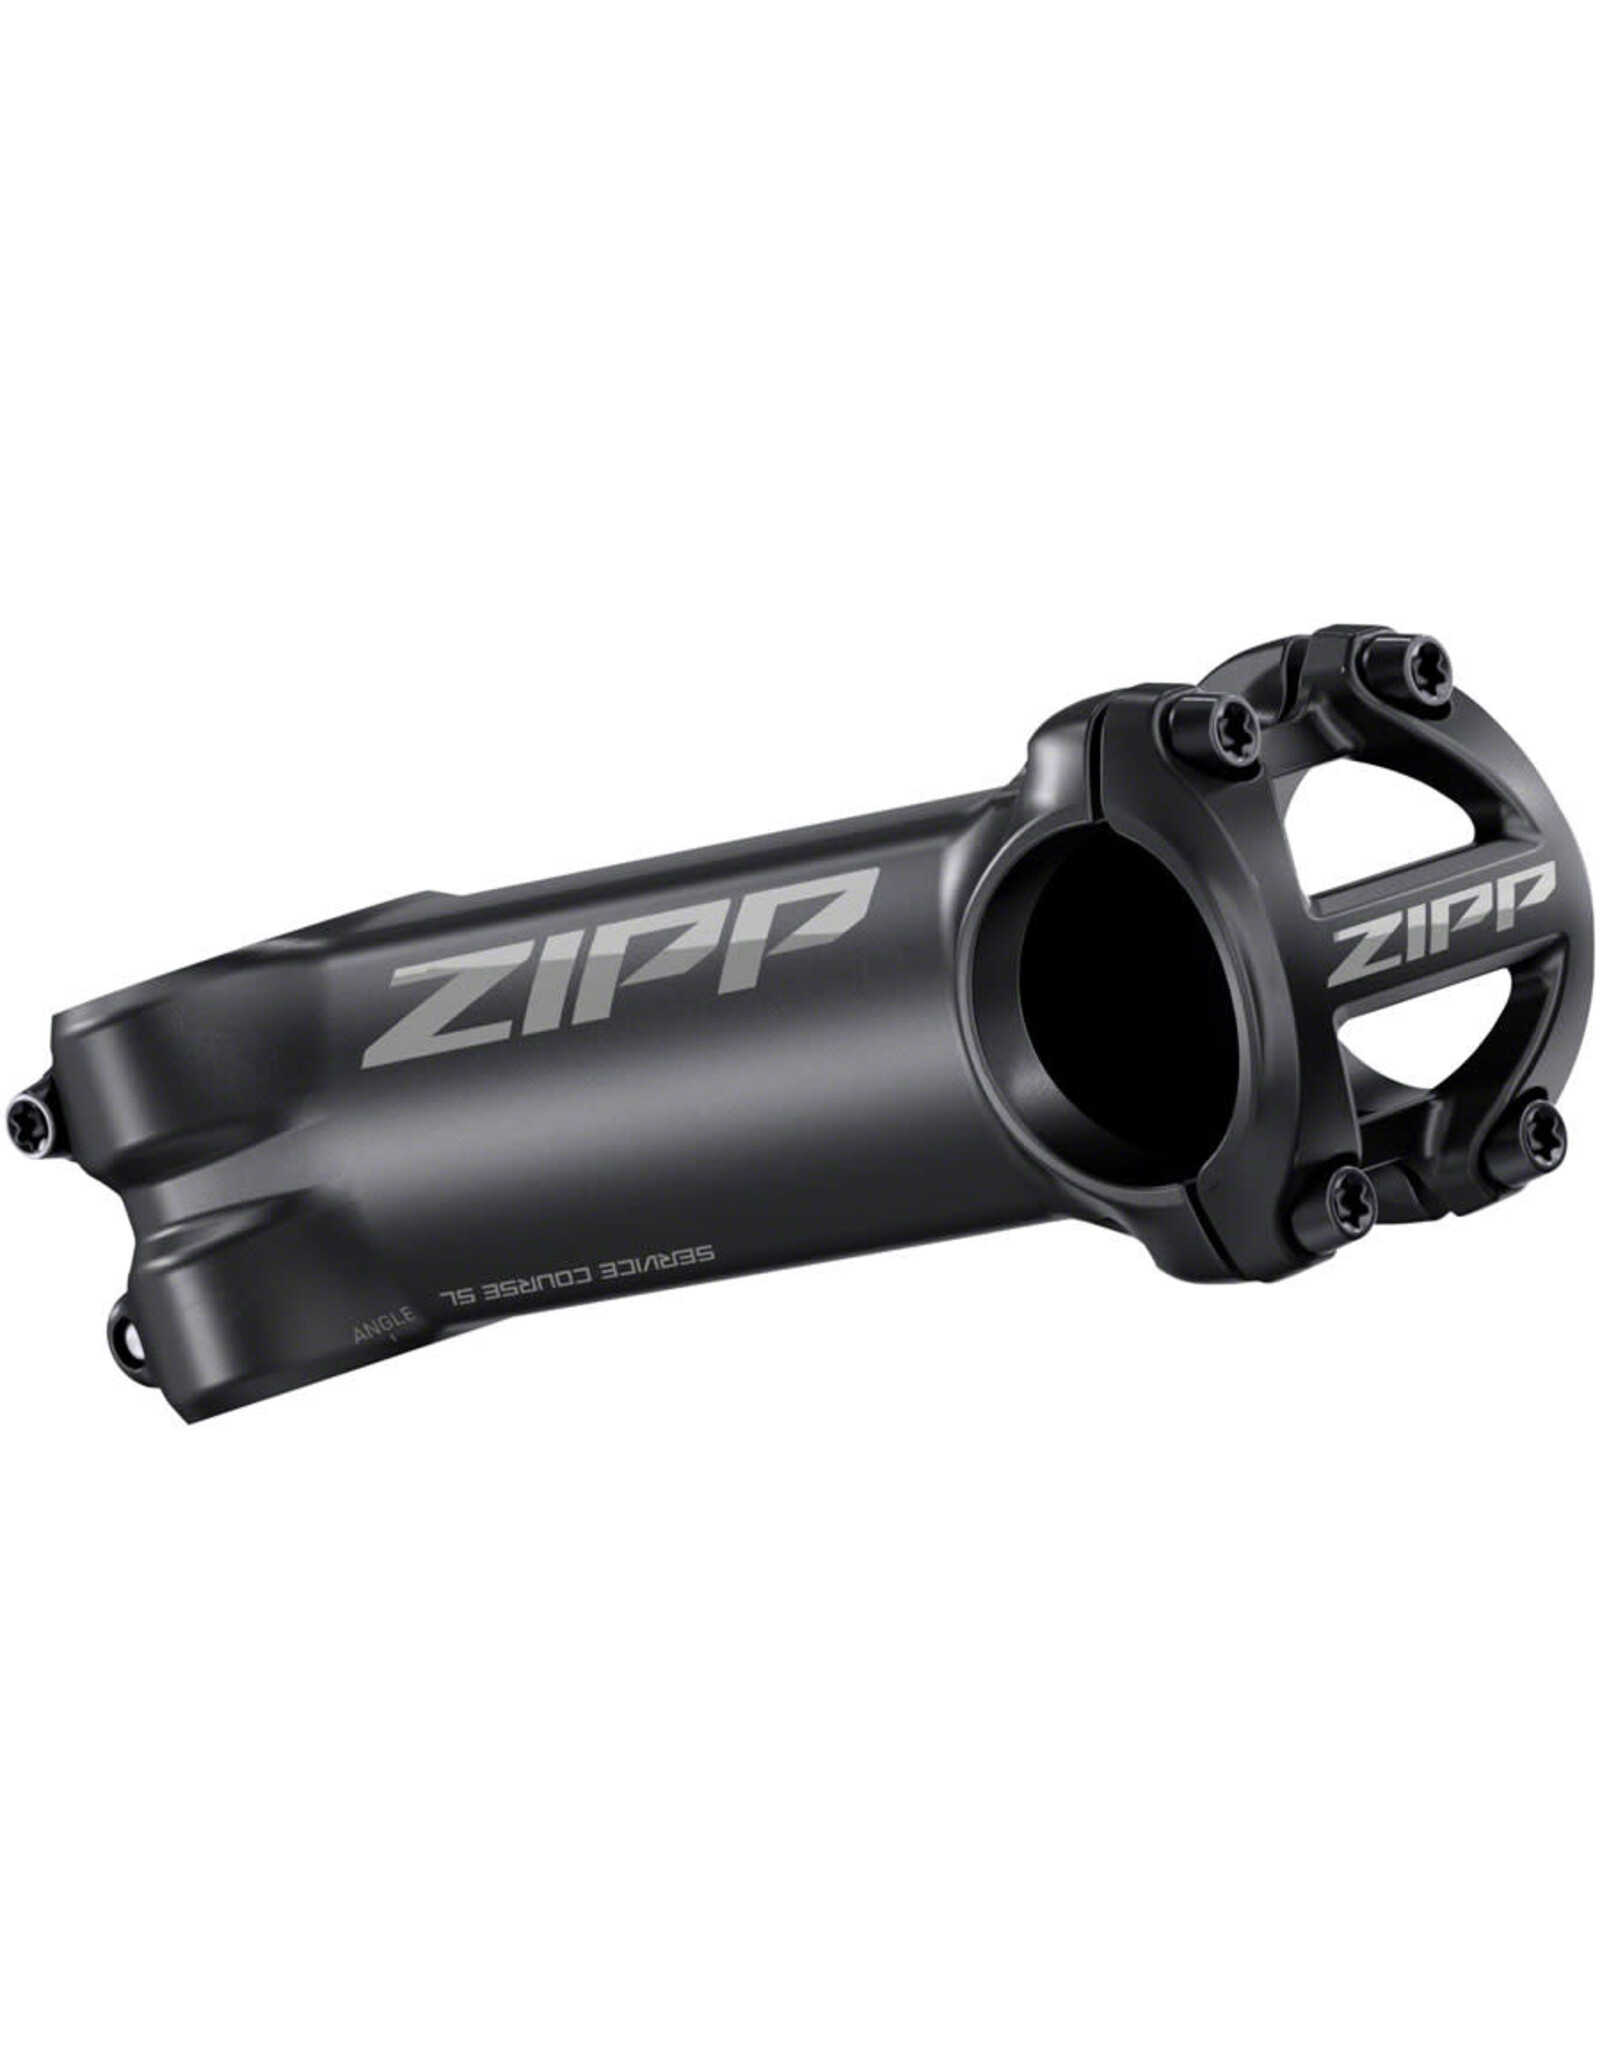 Zipp Zipp Service Course SL-OS Stem - 31.8 Clamp, 6°, 1-1/4